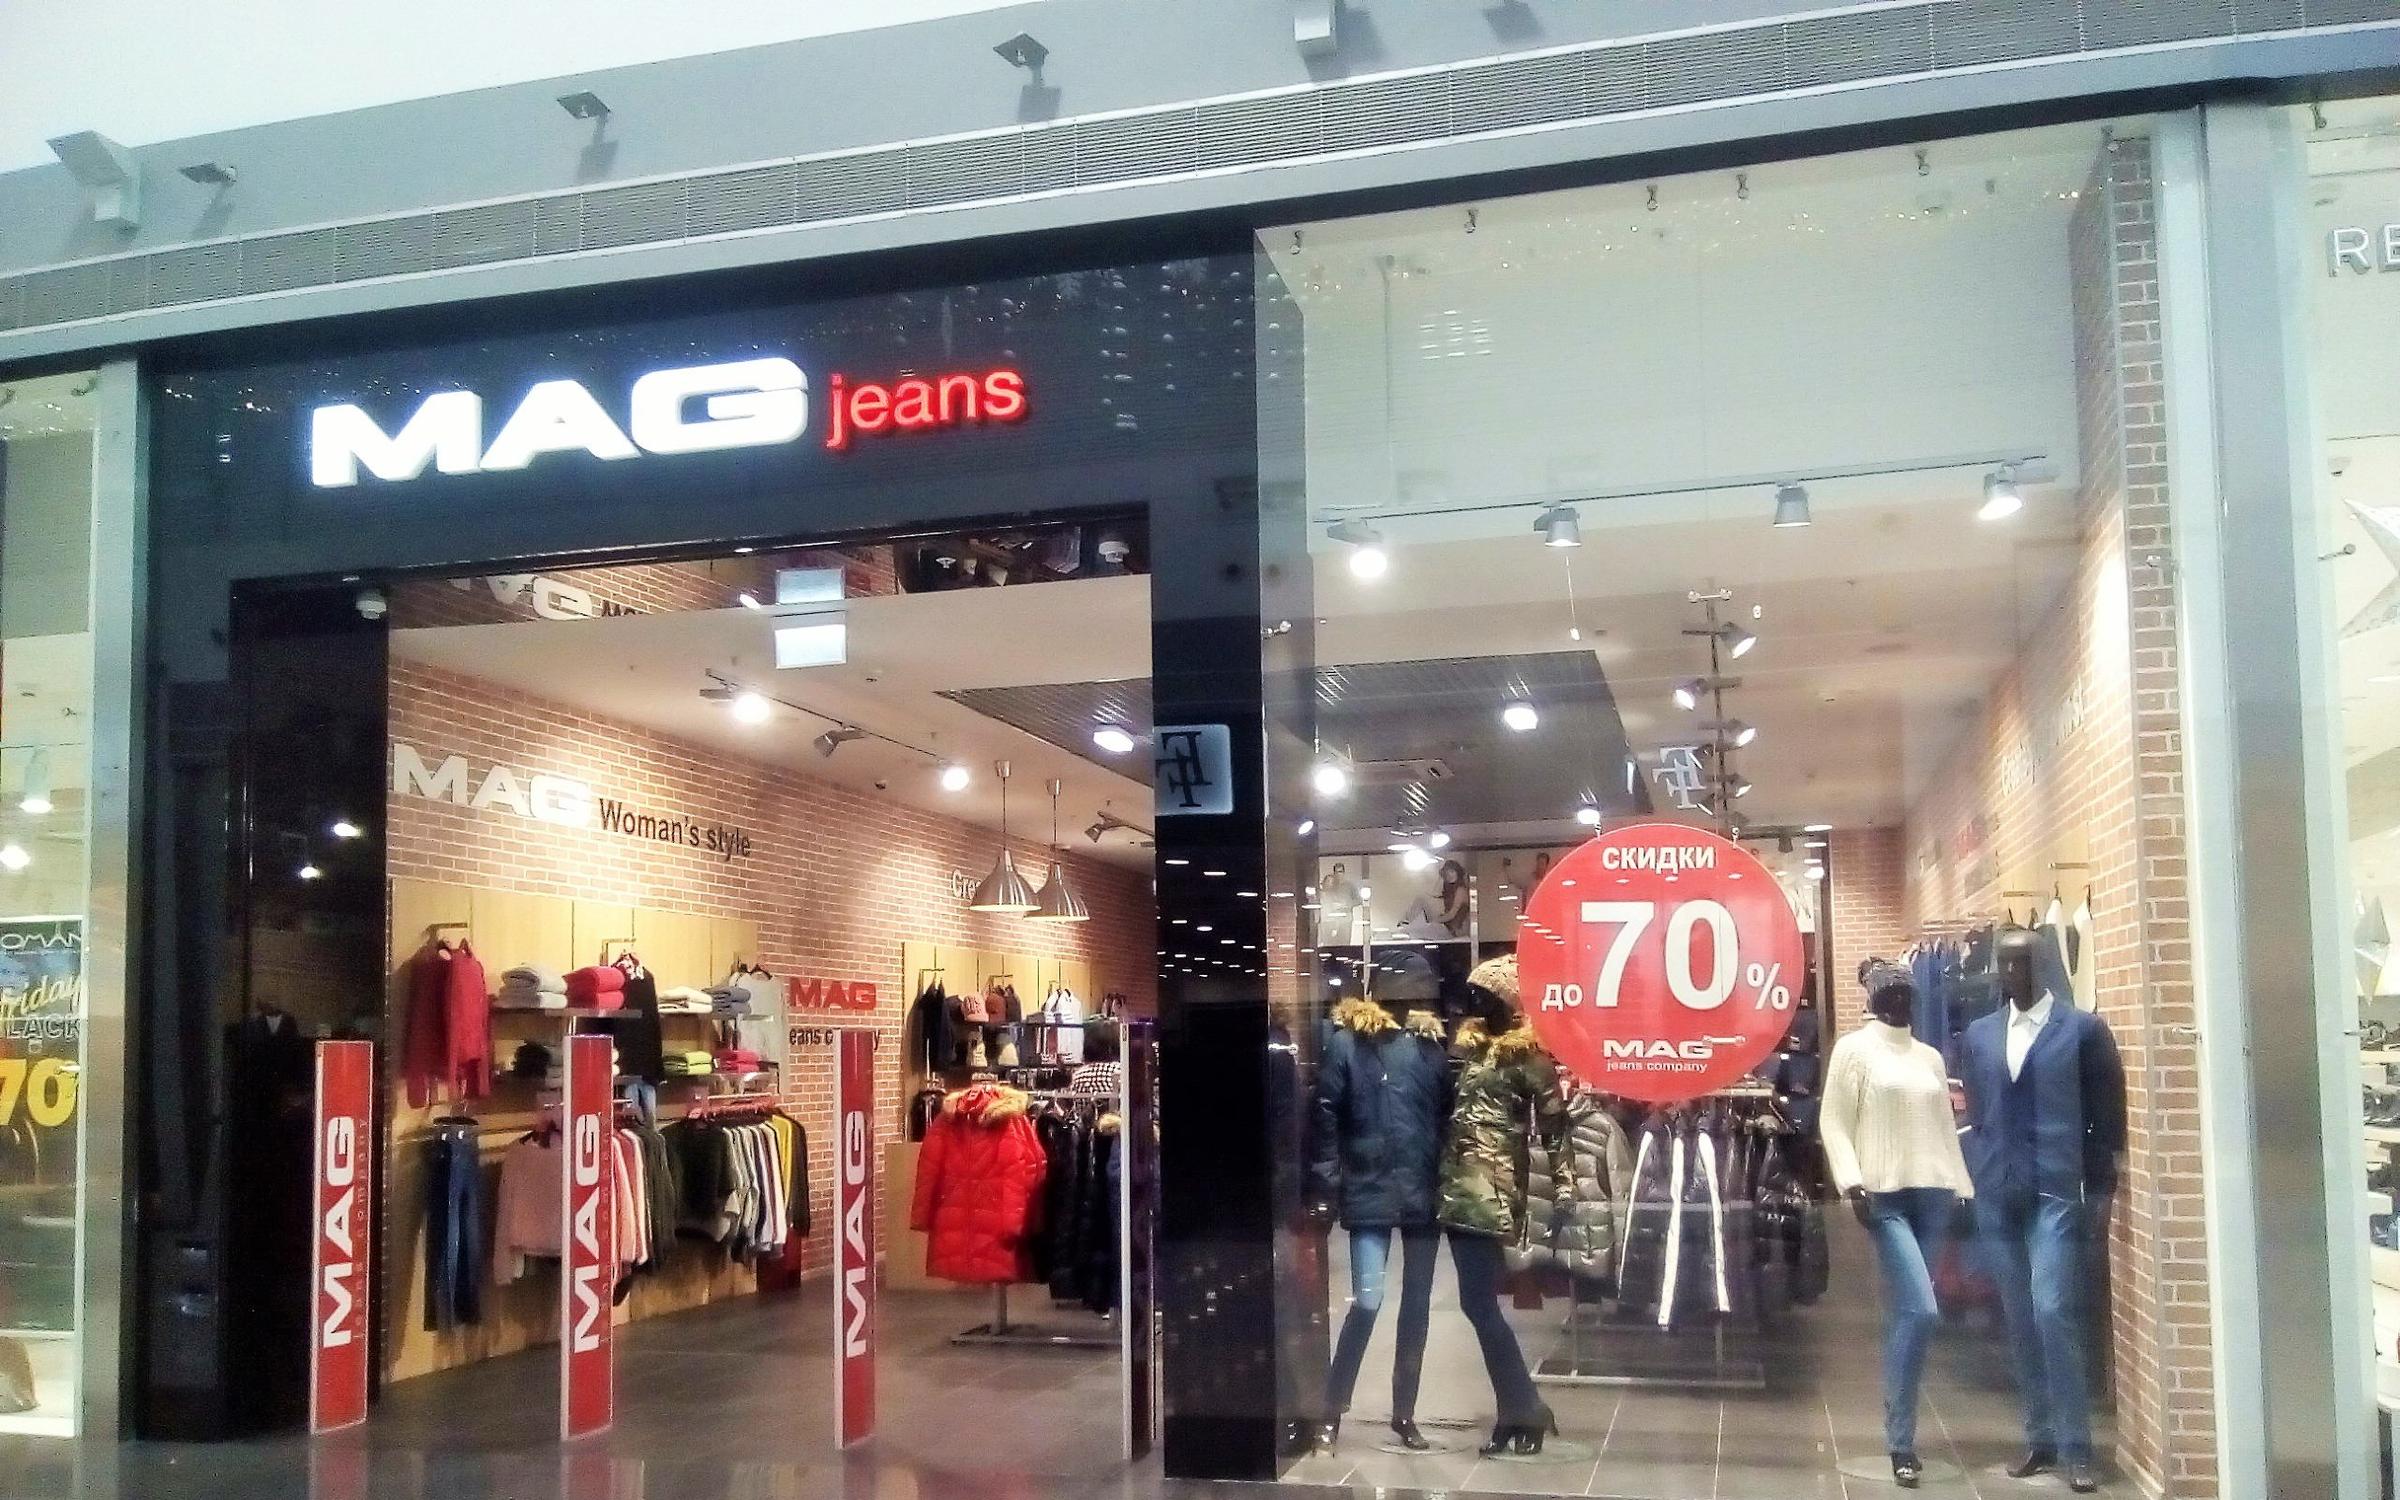 Mag jeans. Mag магазин. Mag магазин одежды. Мега джинс. Фирма одежды mag.